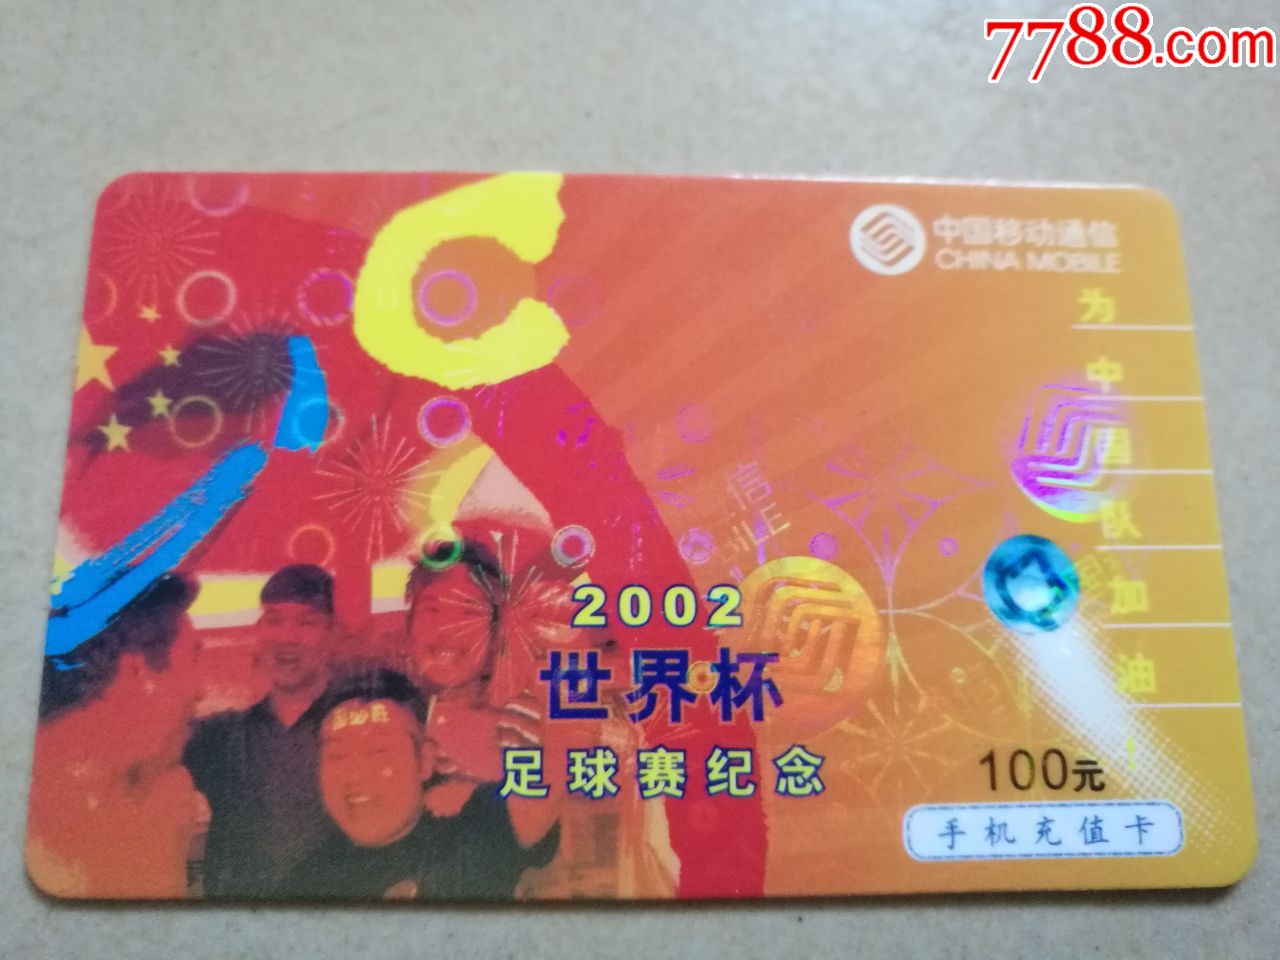 2002世界杯足球赛纪念卡、看不懂外文卡等共